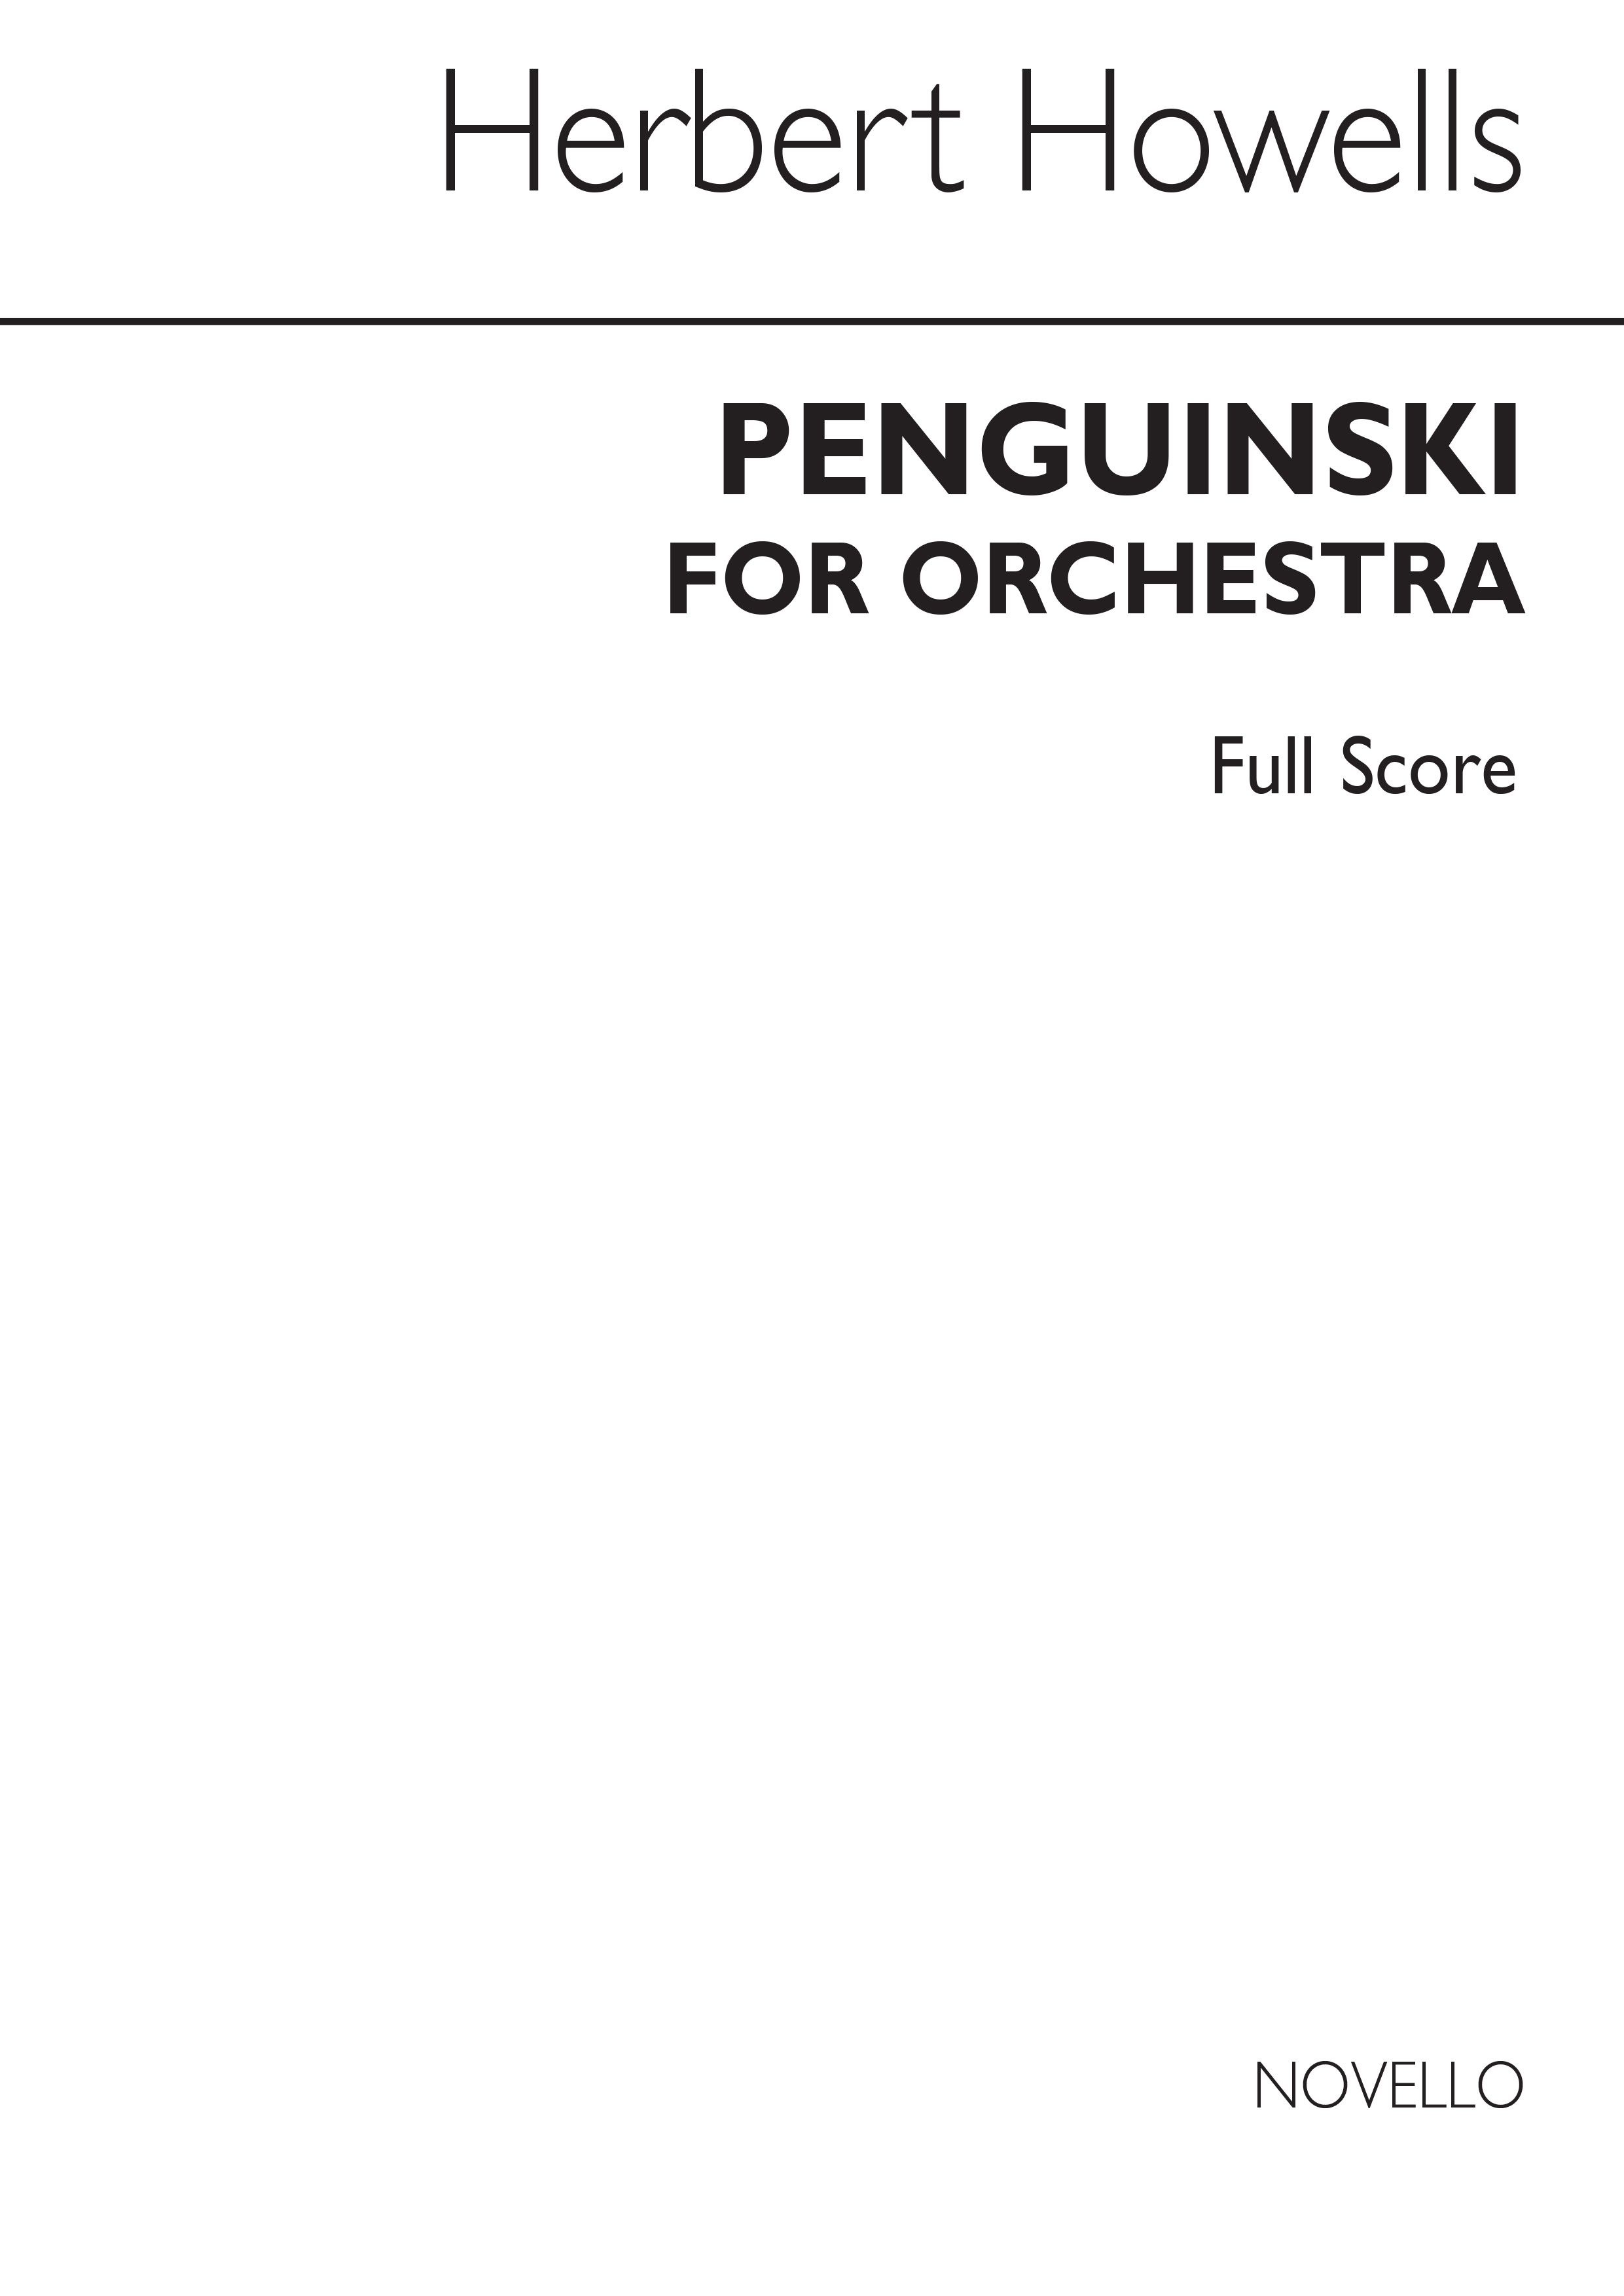 Herbert Howells: Penguinski For Orchestra (Full Score): Orchestra: Score